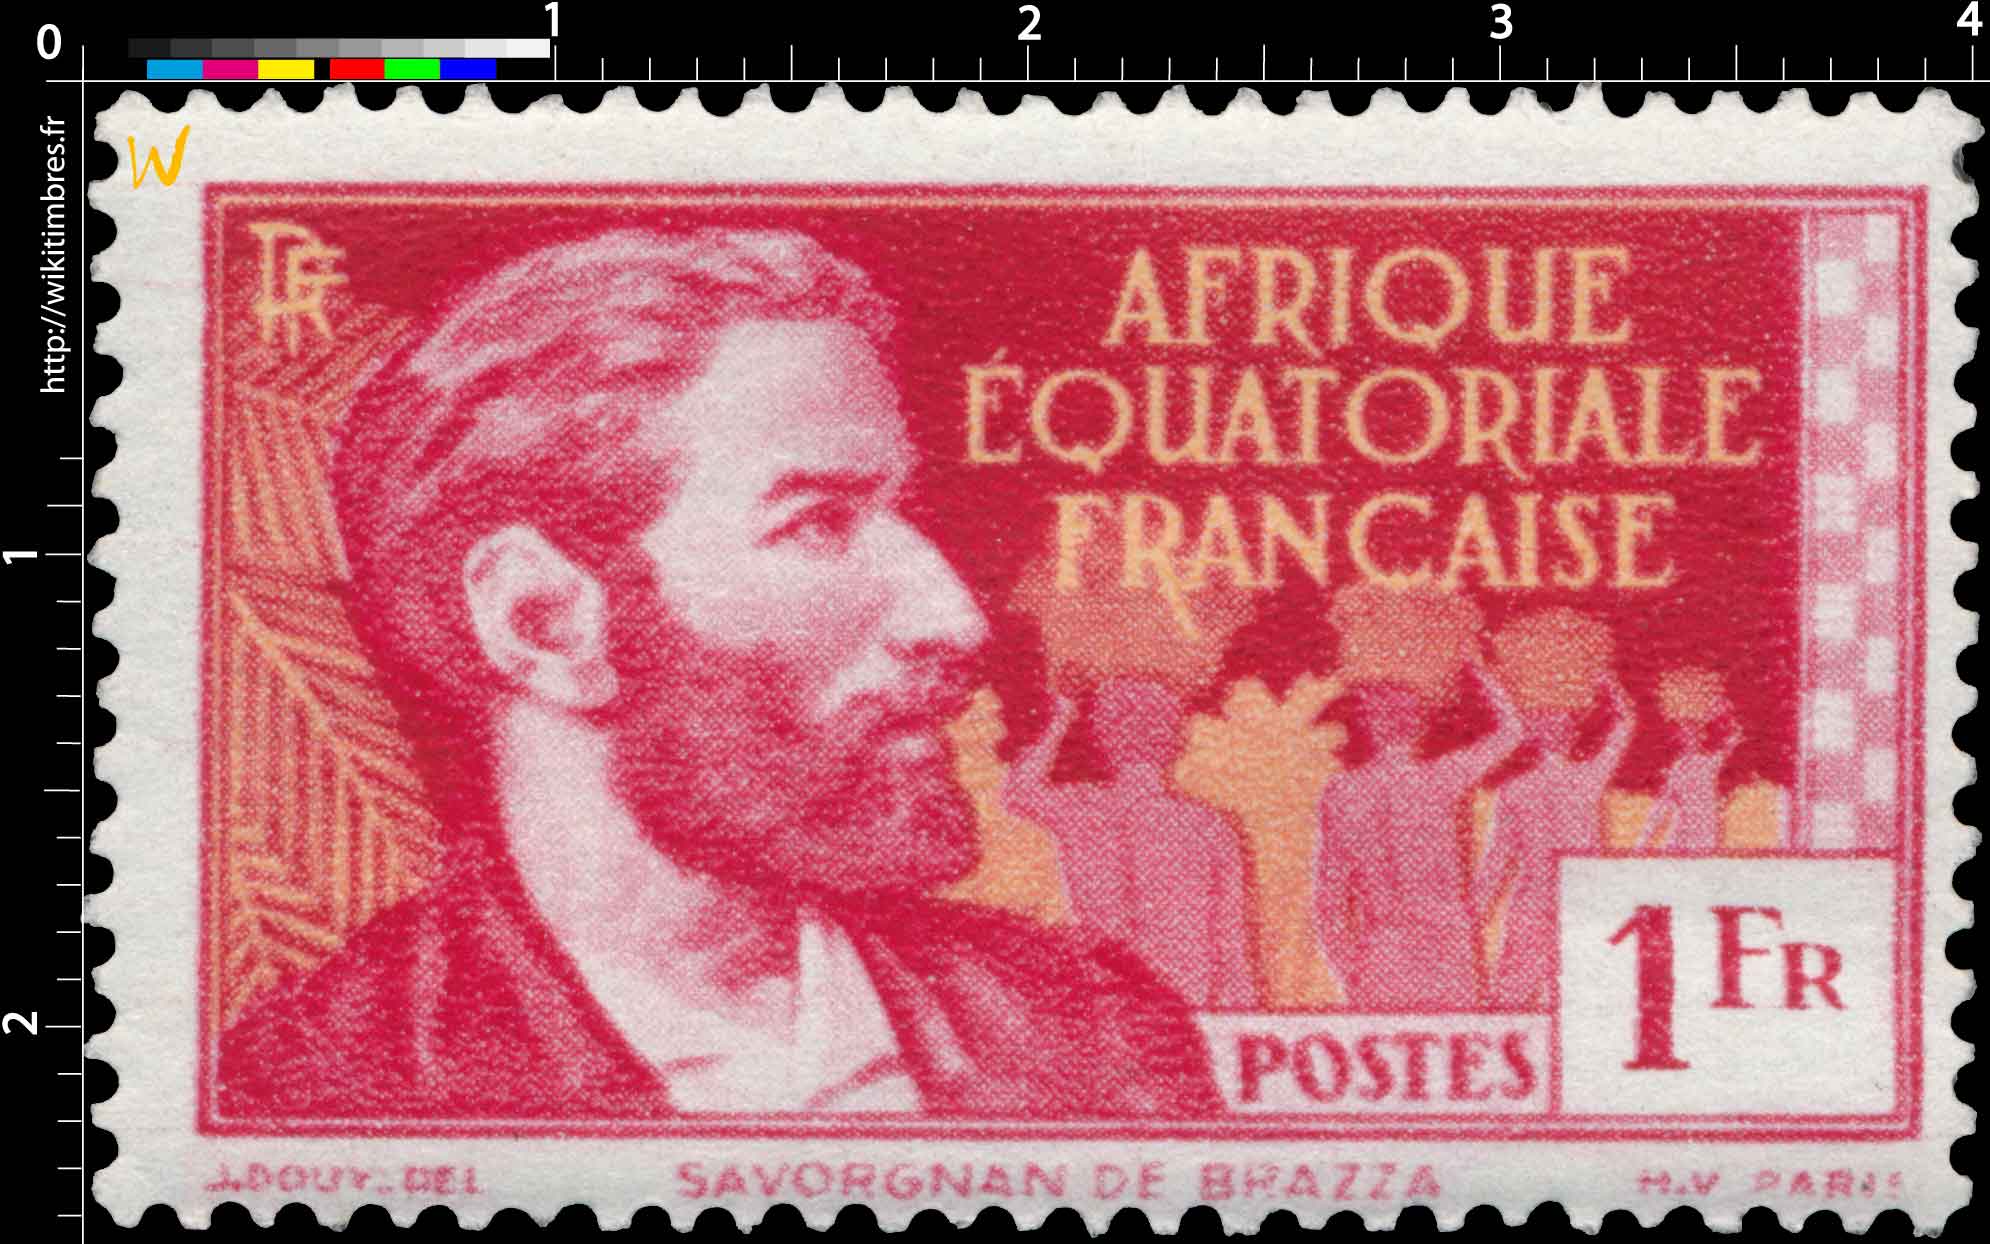 Savorgnan de Brazza Afrique Équatoriale Française